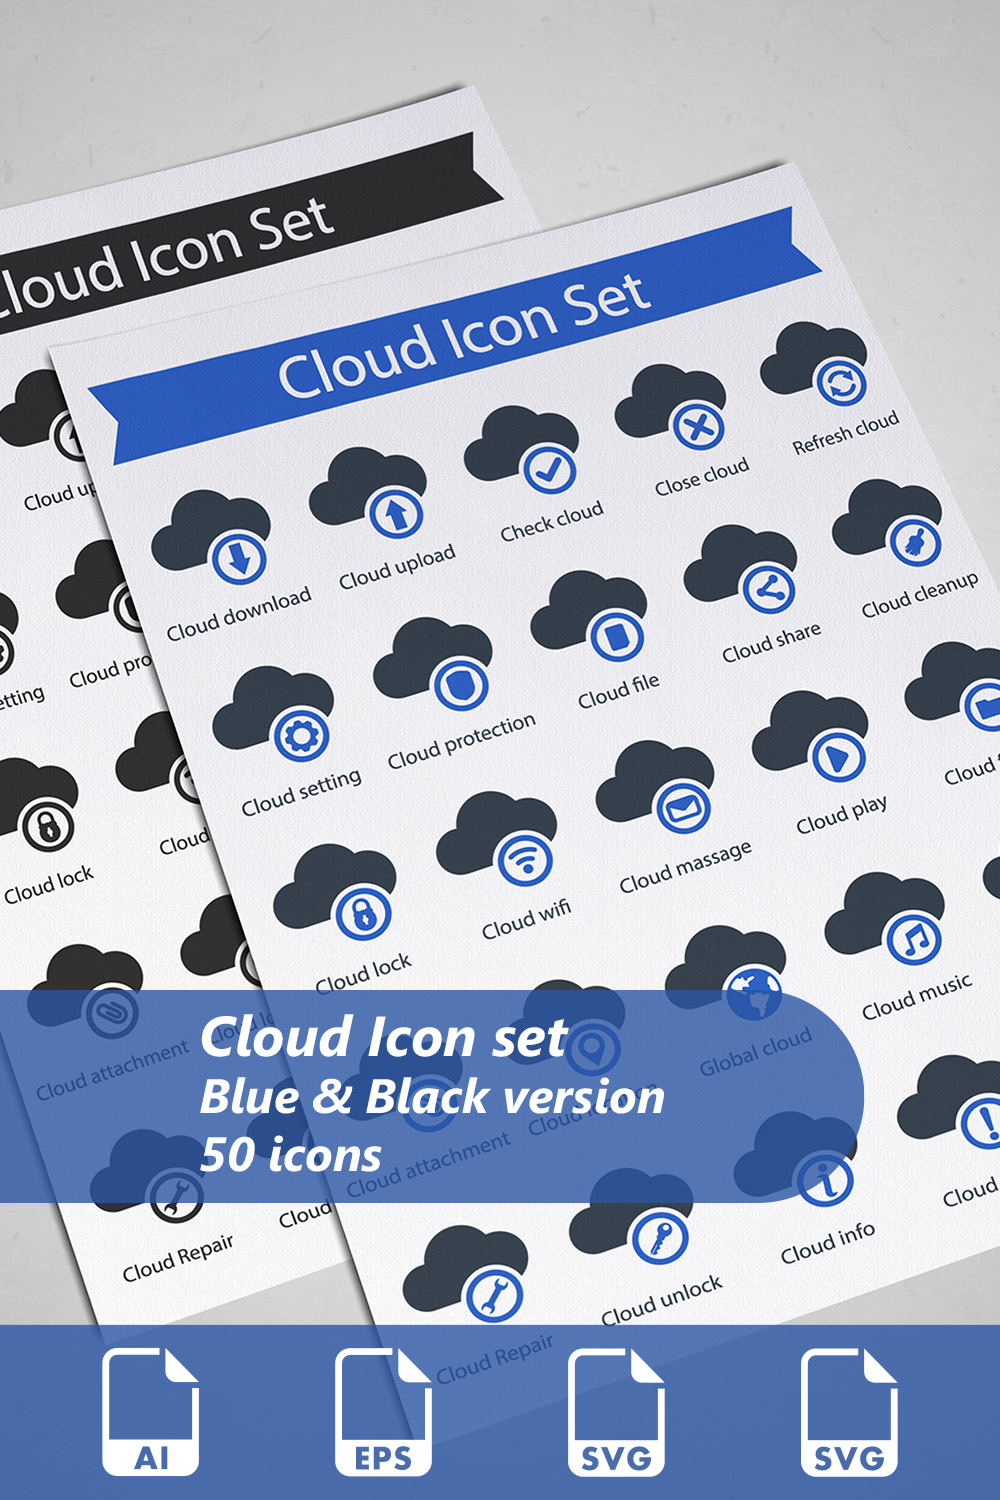 Cloud Icon Set pinterest preview image.